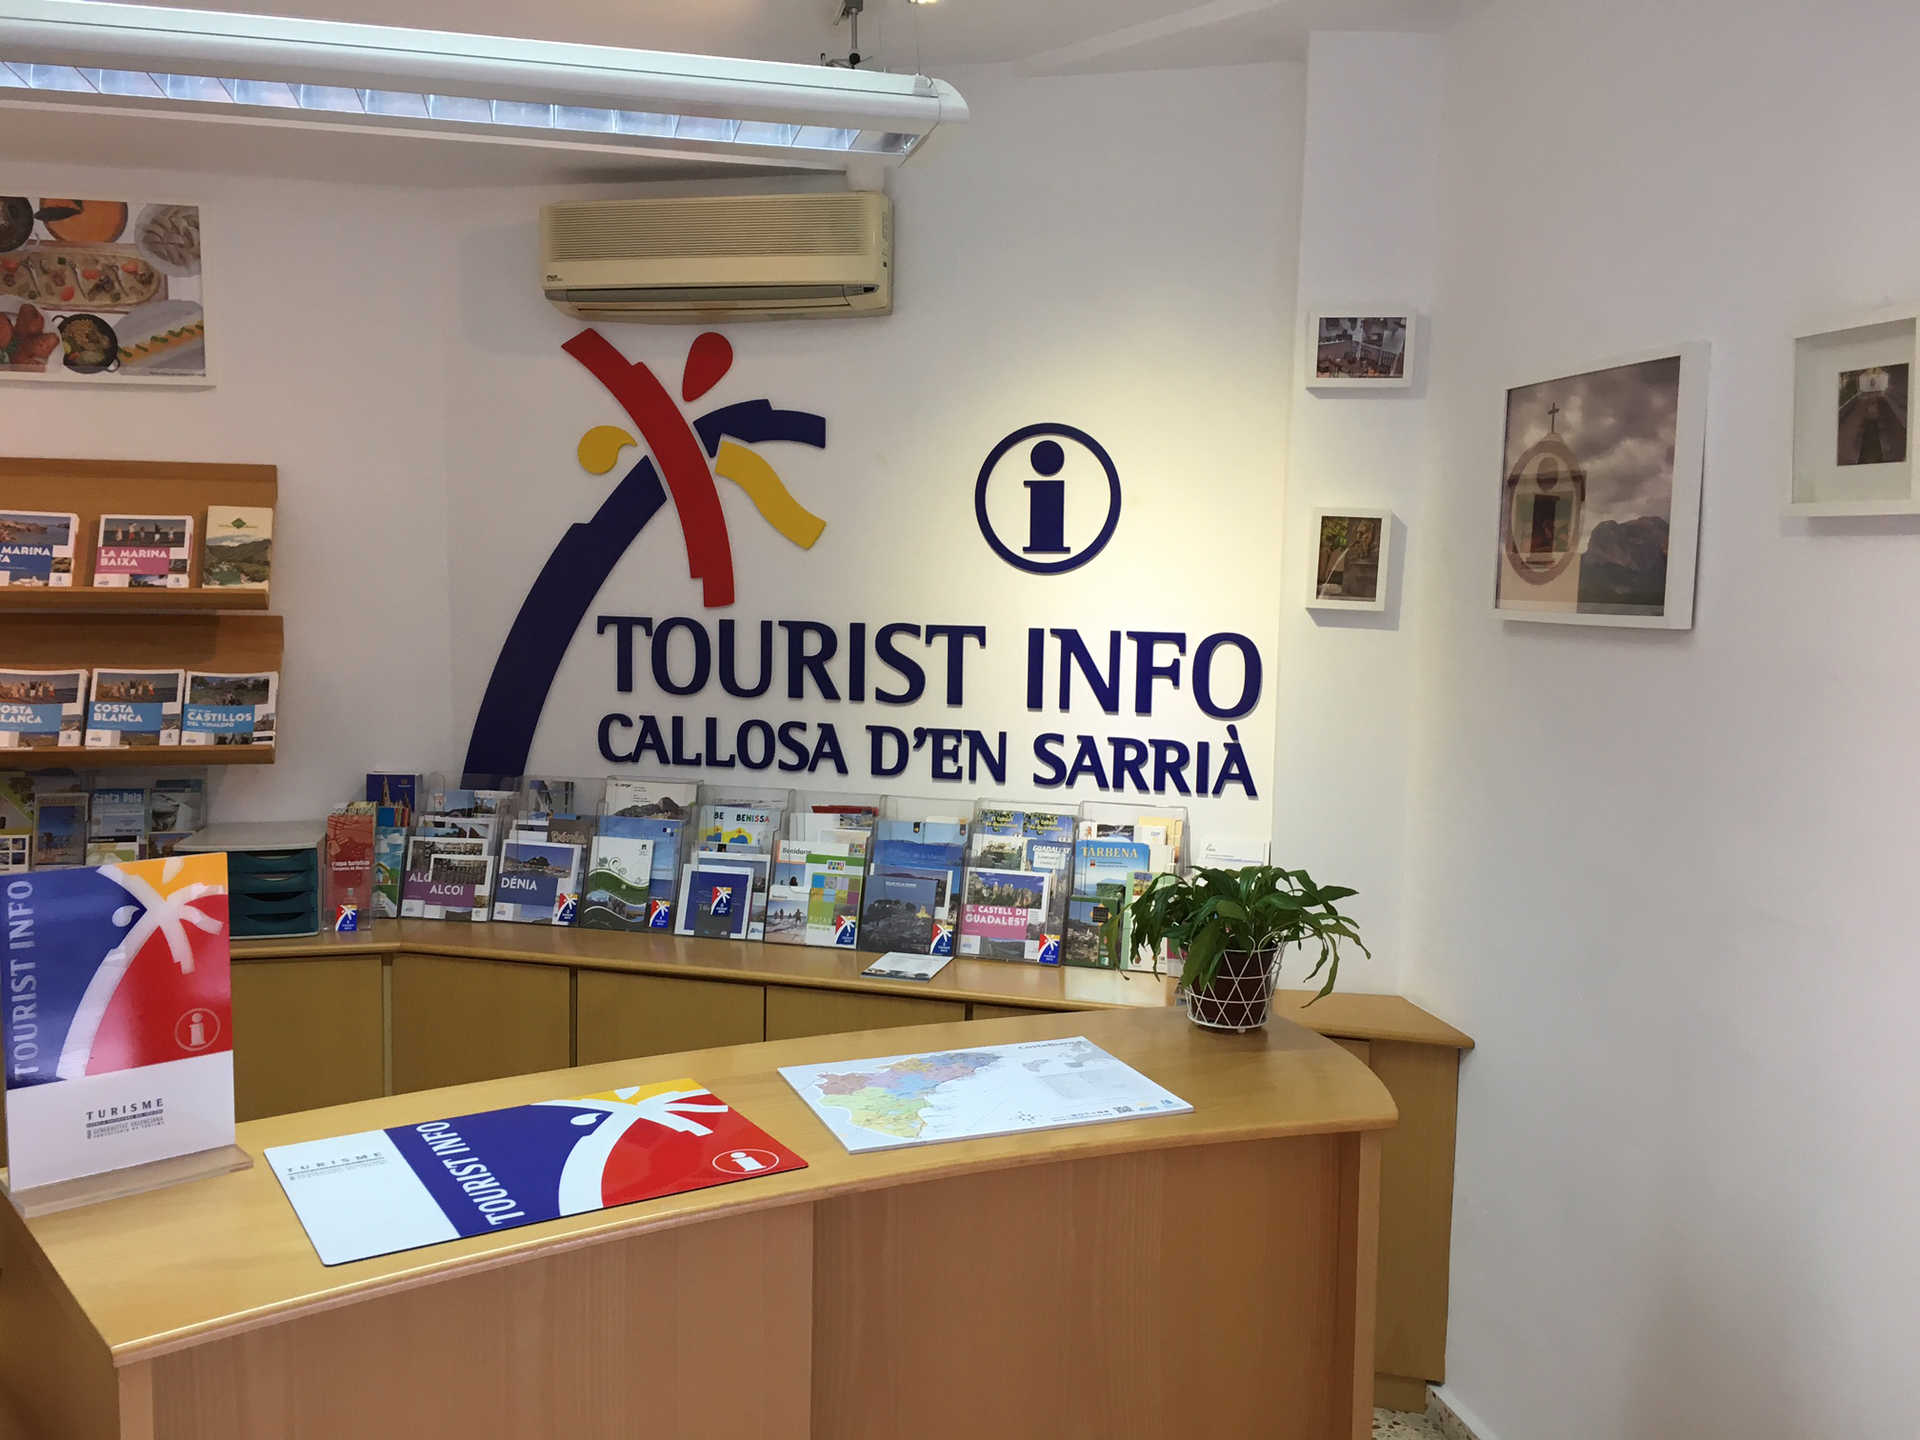 TOURIST INFO CALLOSA D'EN SARRIÀ